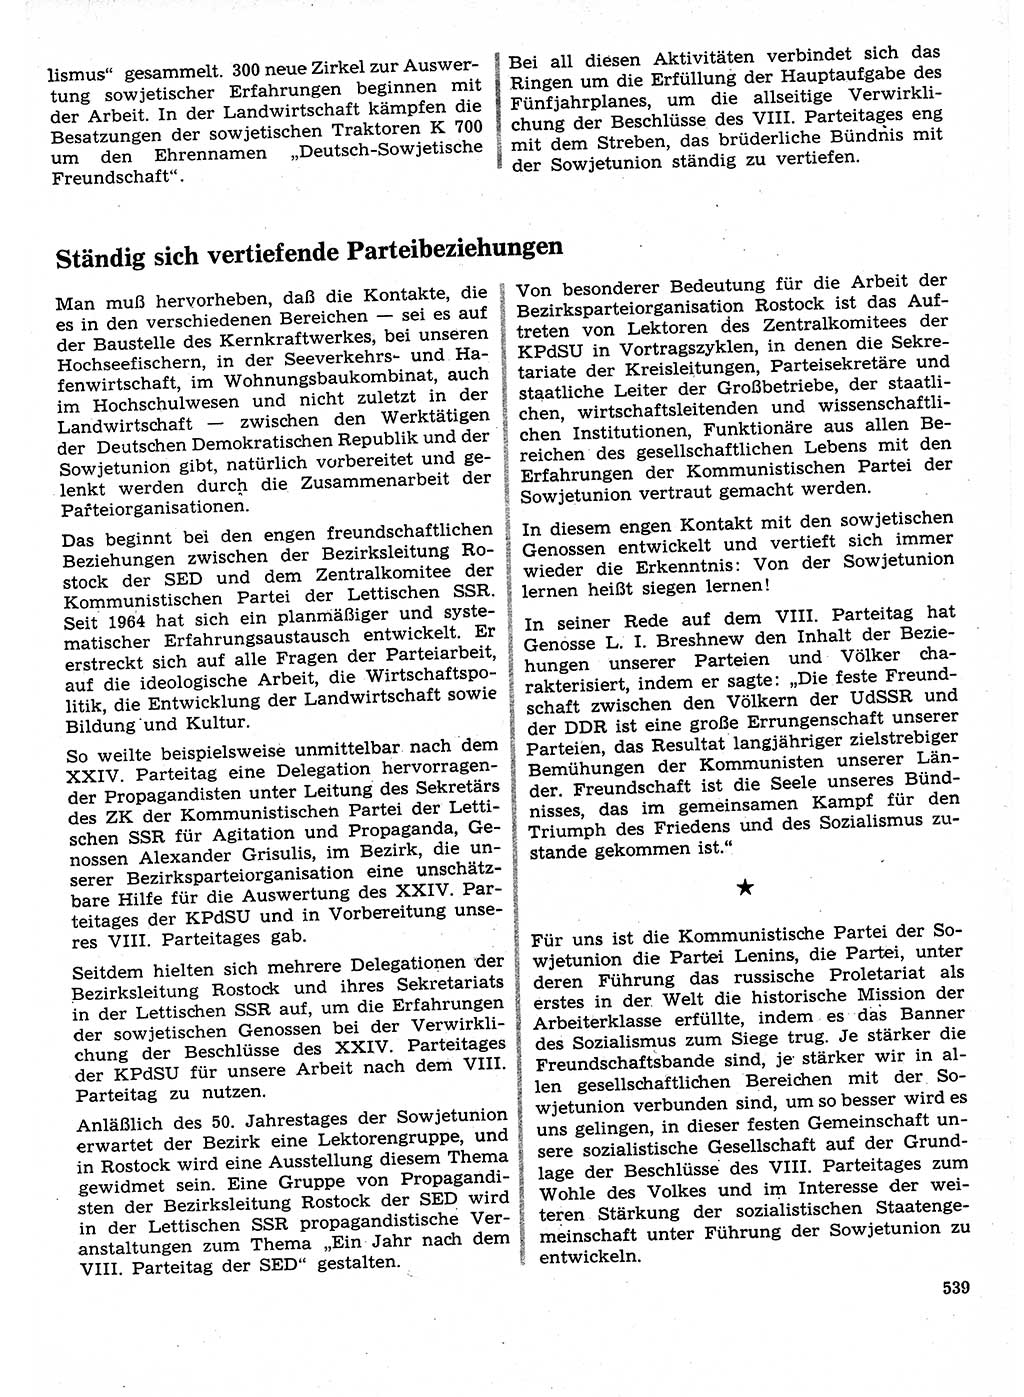 Neuer Weg (NW), Organ des Zentralkomitees (ZK) der SED (Sozialistische Einheitspartei Deutschlands) für Fragen des Parteilebens, 27. Jahrgang [Deutsche Demokratische Republik (DDR)] 1972, Seite 539 (NW ZK SED DDR 1972, S. 539)